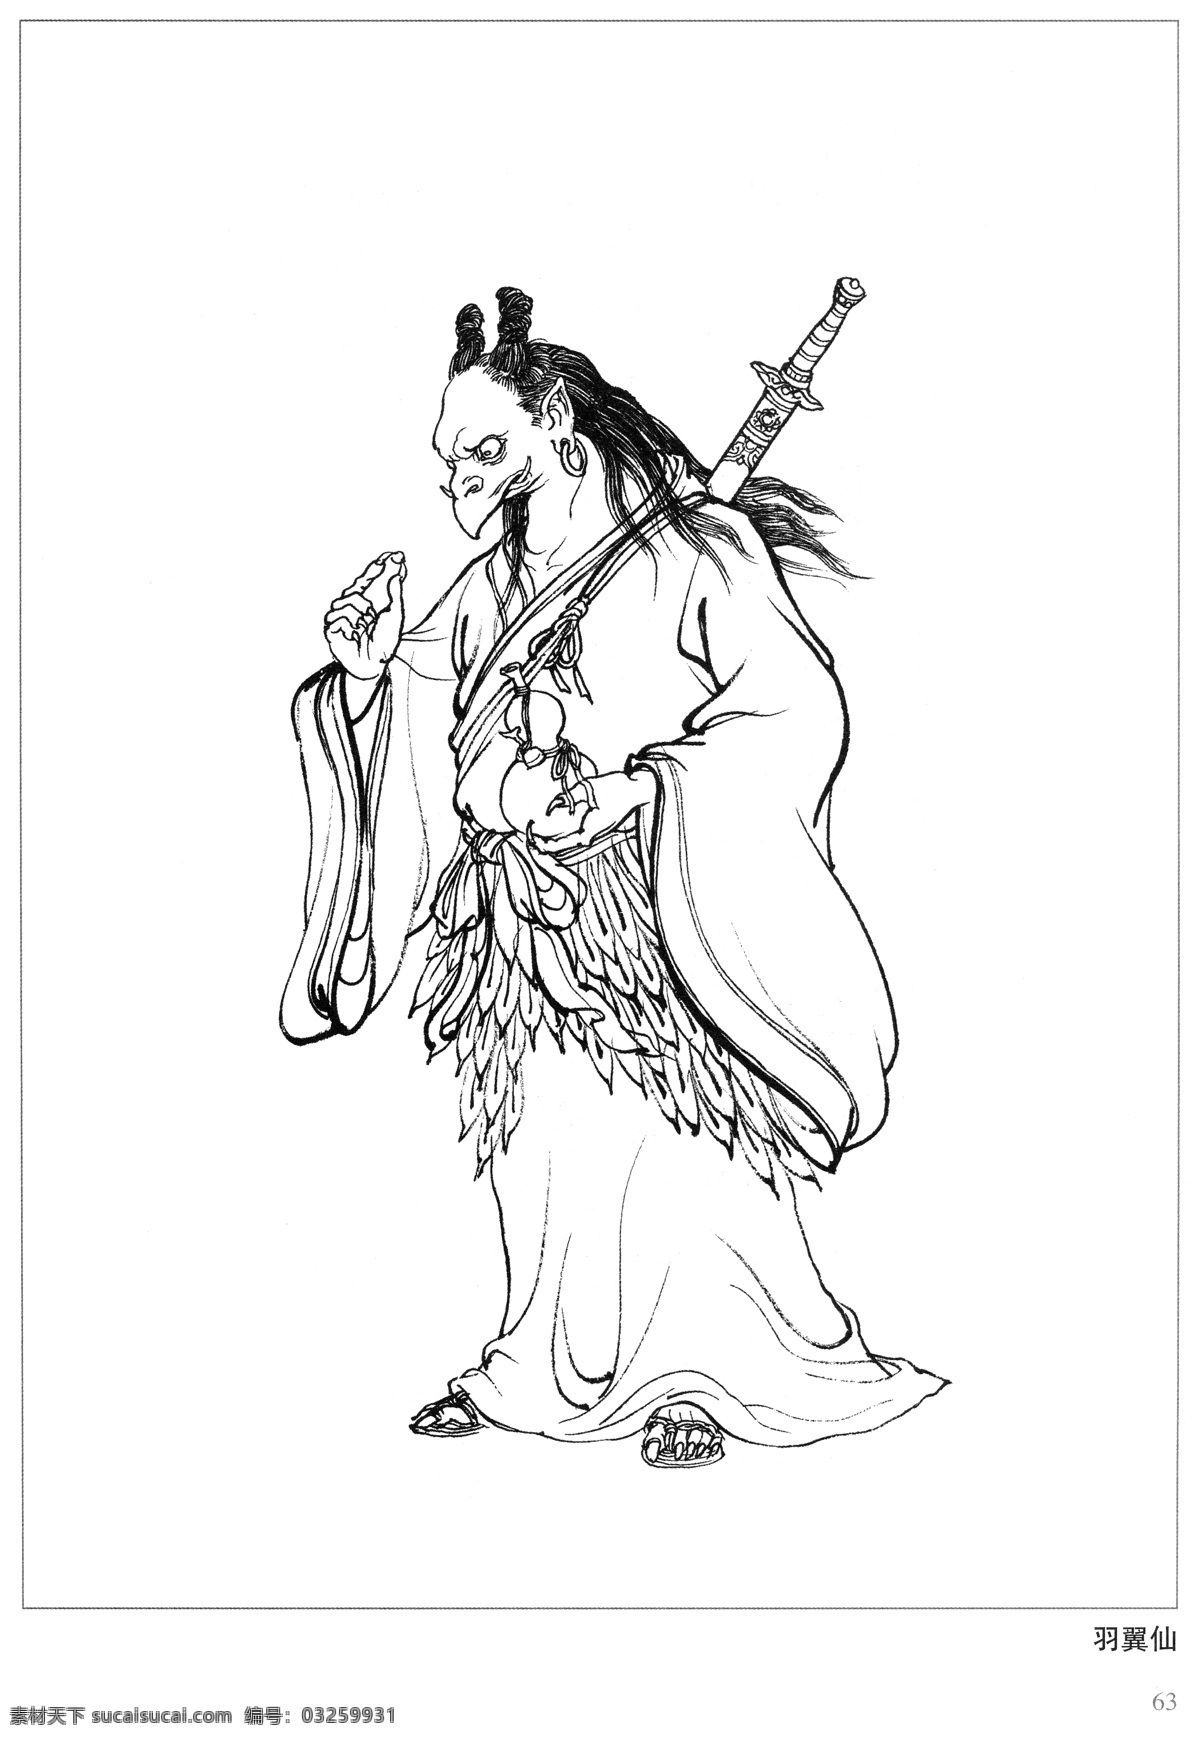 羽翼仙 封神演义 古代 神仙 白描 人物 图 文化艺术 传统文化